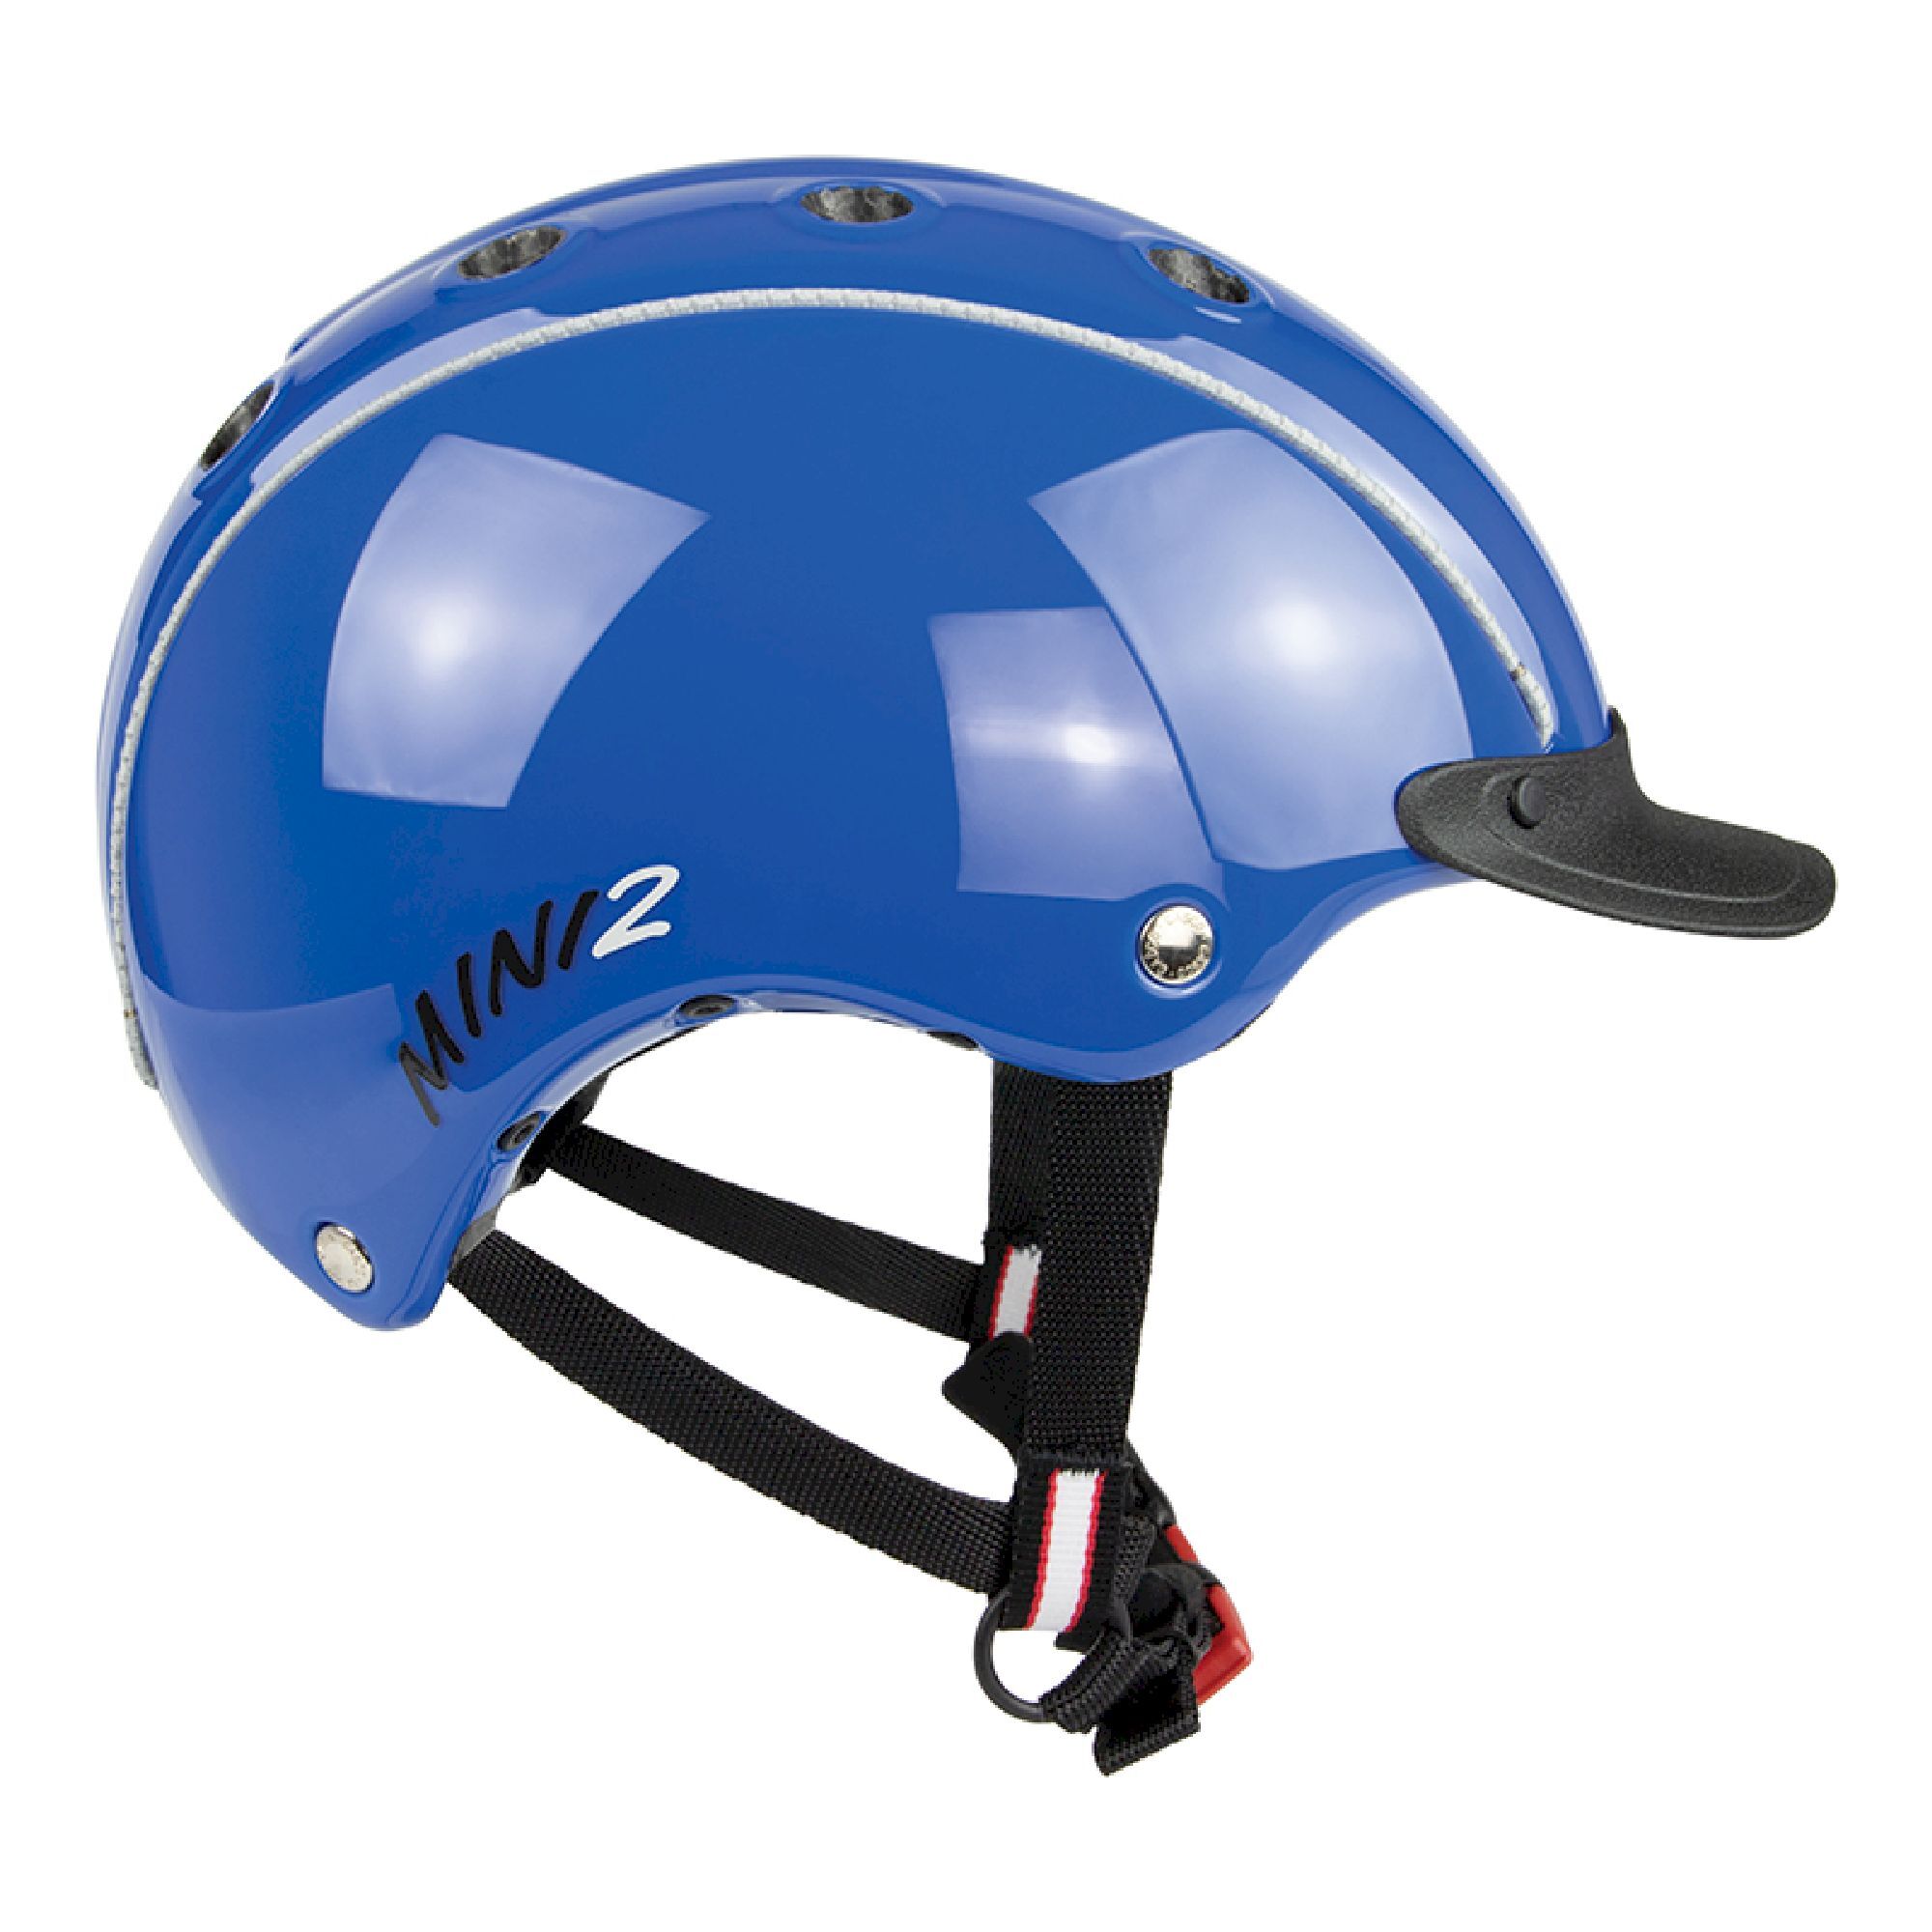 Casco Mini 2 - Bicycle helmet - Kids